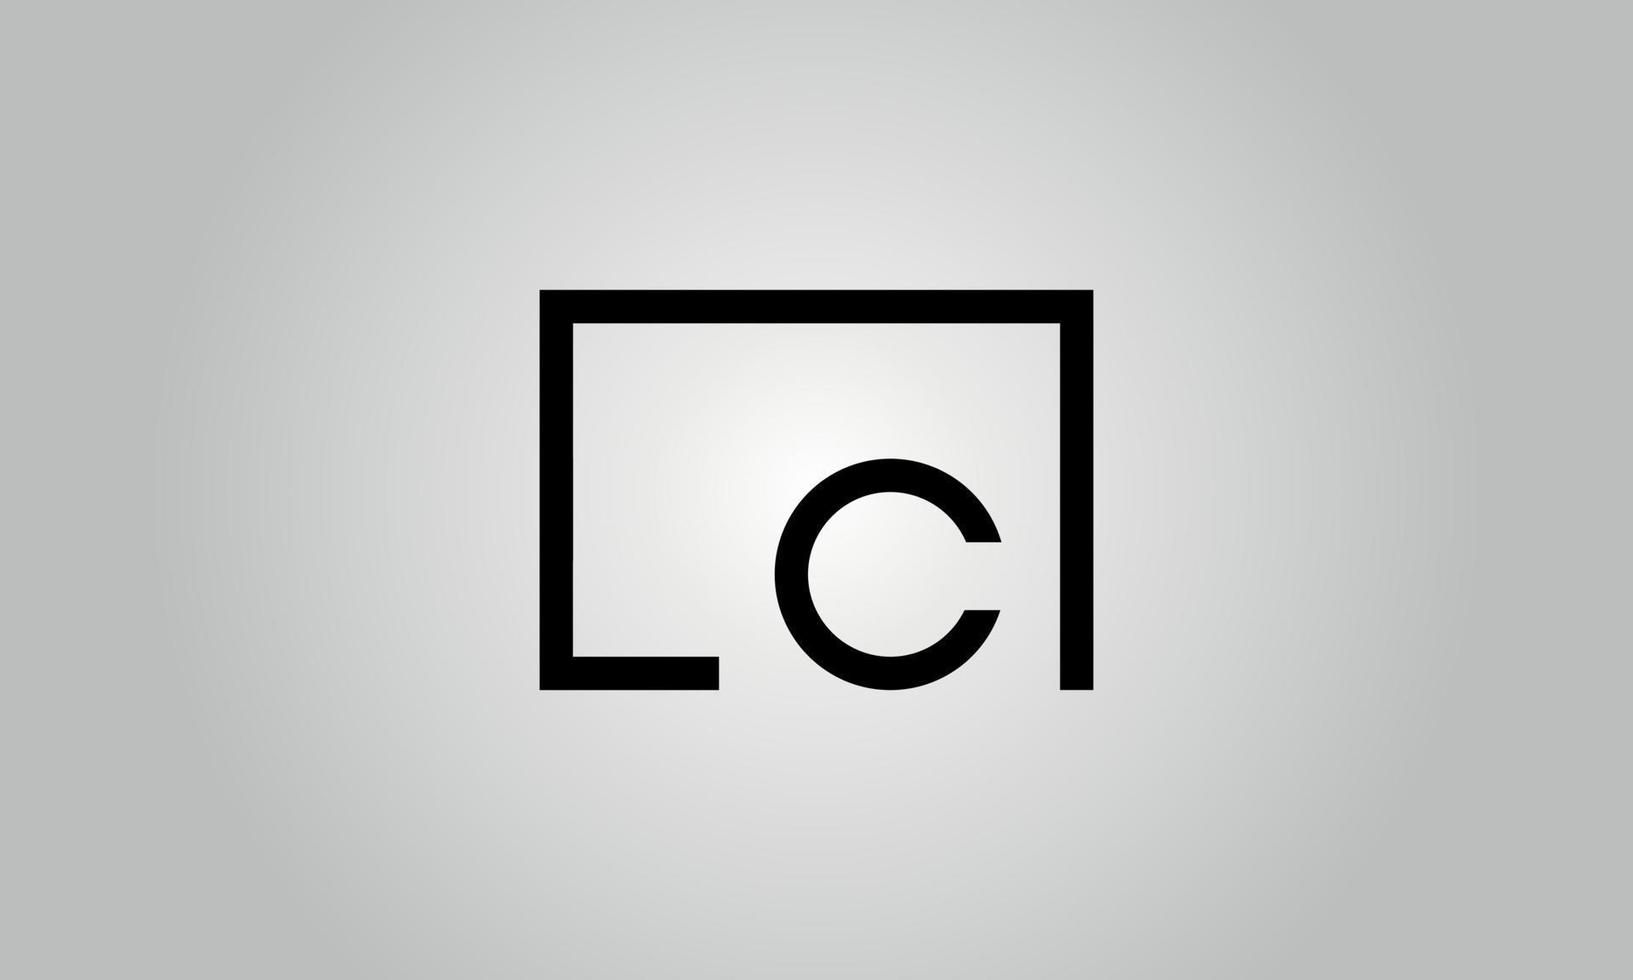 création de logo lettre lc. logo lc avec forme carrée dans le modèle vectoriel gratuit de couleurs noires.